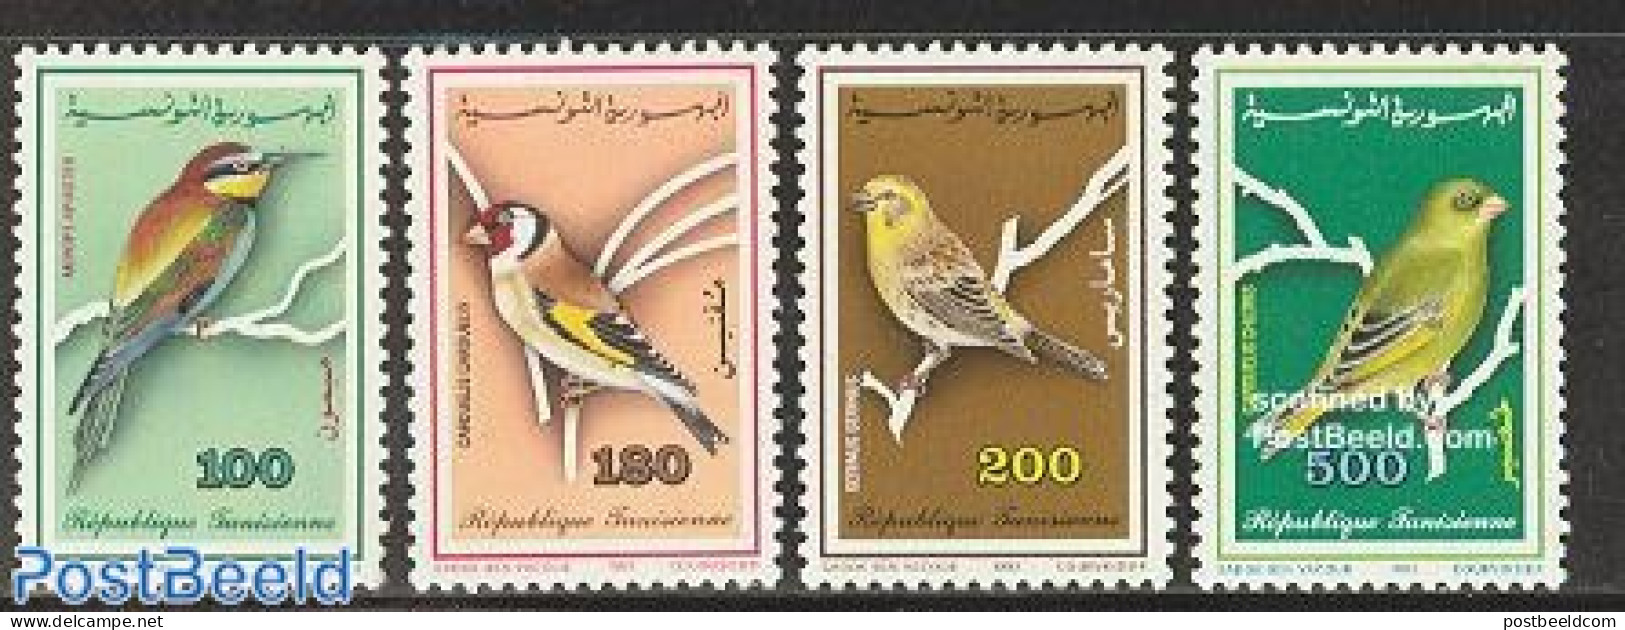 Tunisia 1992 Birds 4v, Mint NH, Nature - Birds - Tunisia